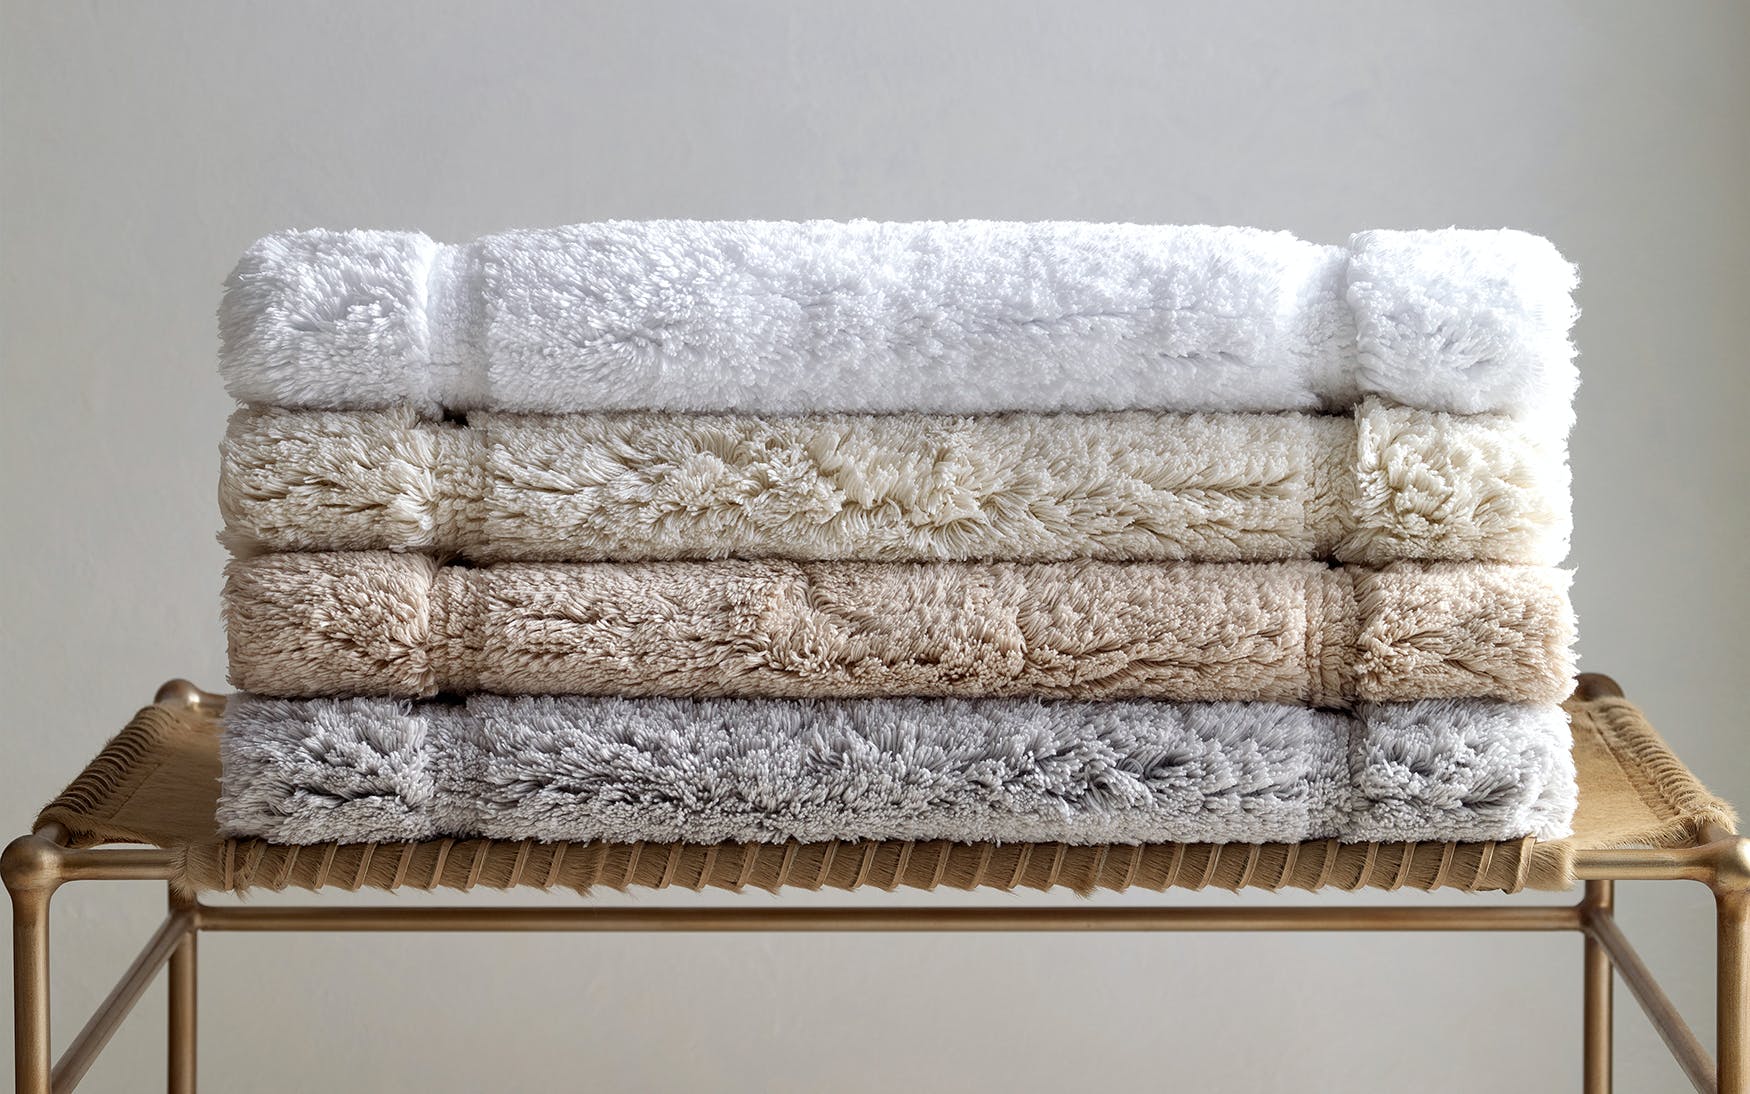 Auberge Hand Towel 20 X 32 (4 pcs) - Jabbour Linens